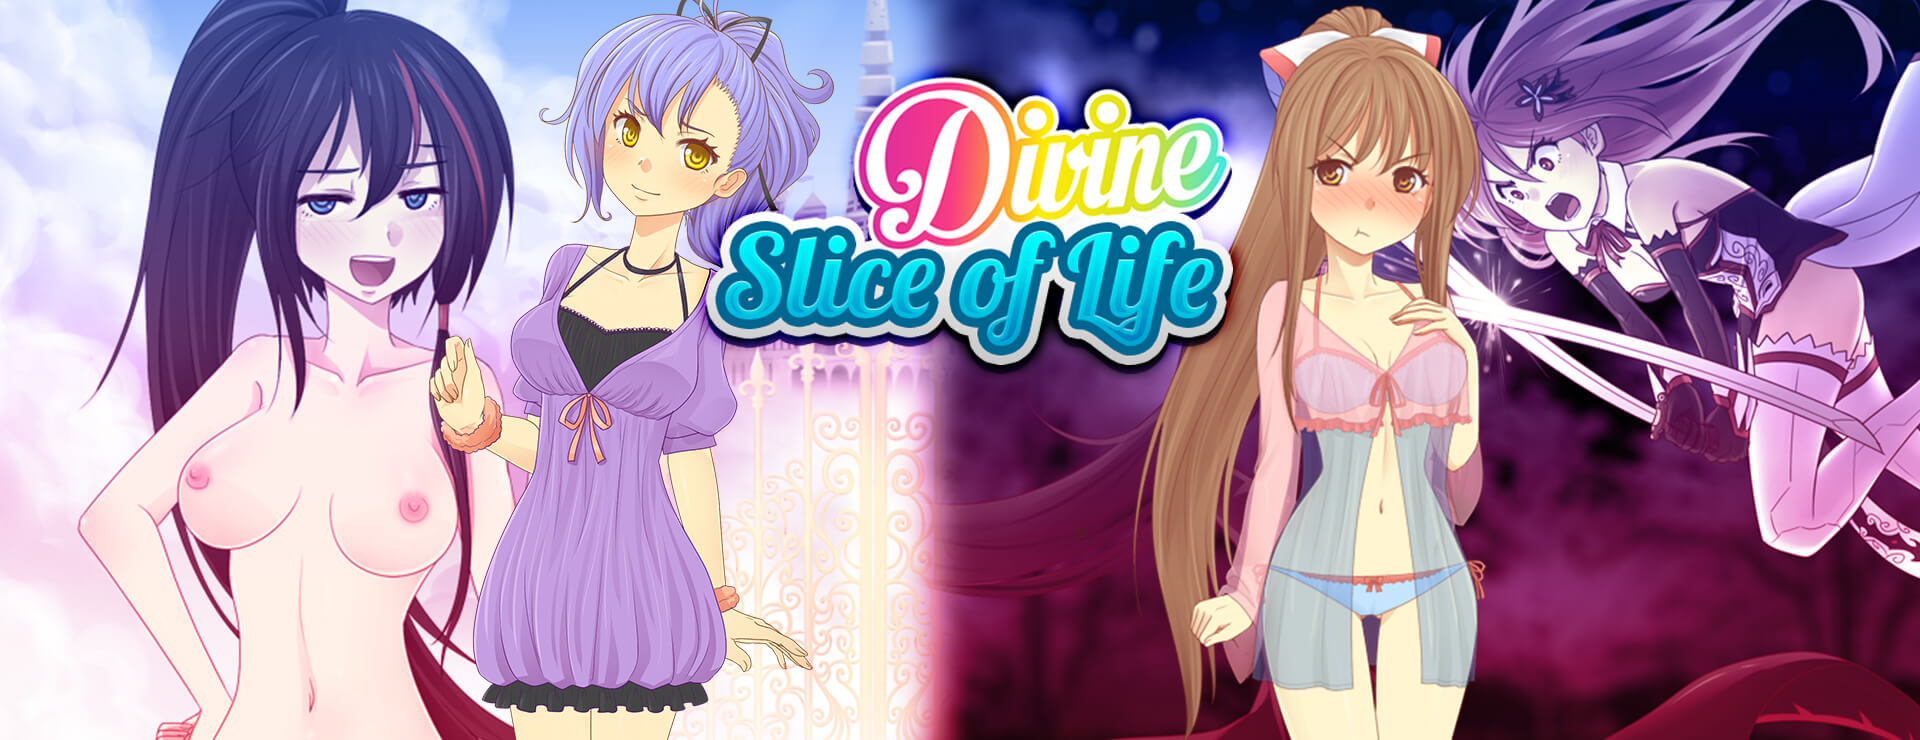 Divine Slice of Life - ビジュアルノベル ゲーム